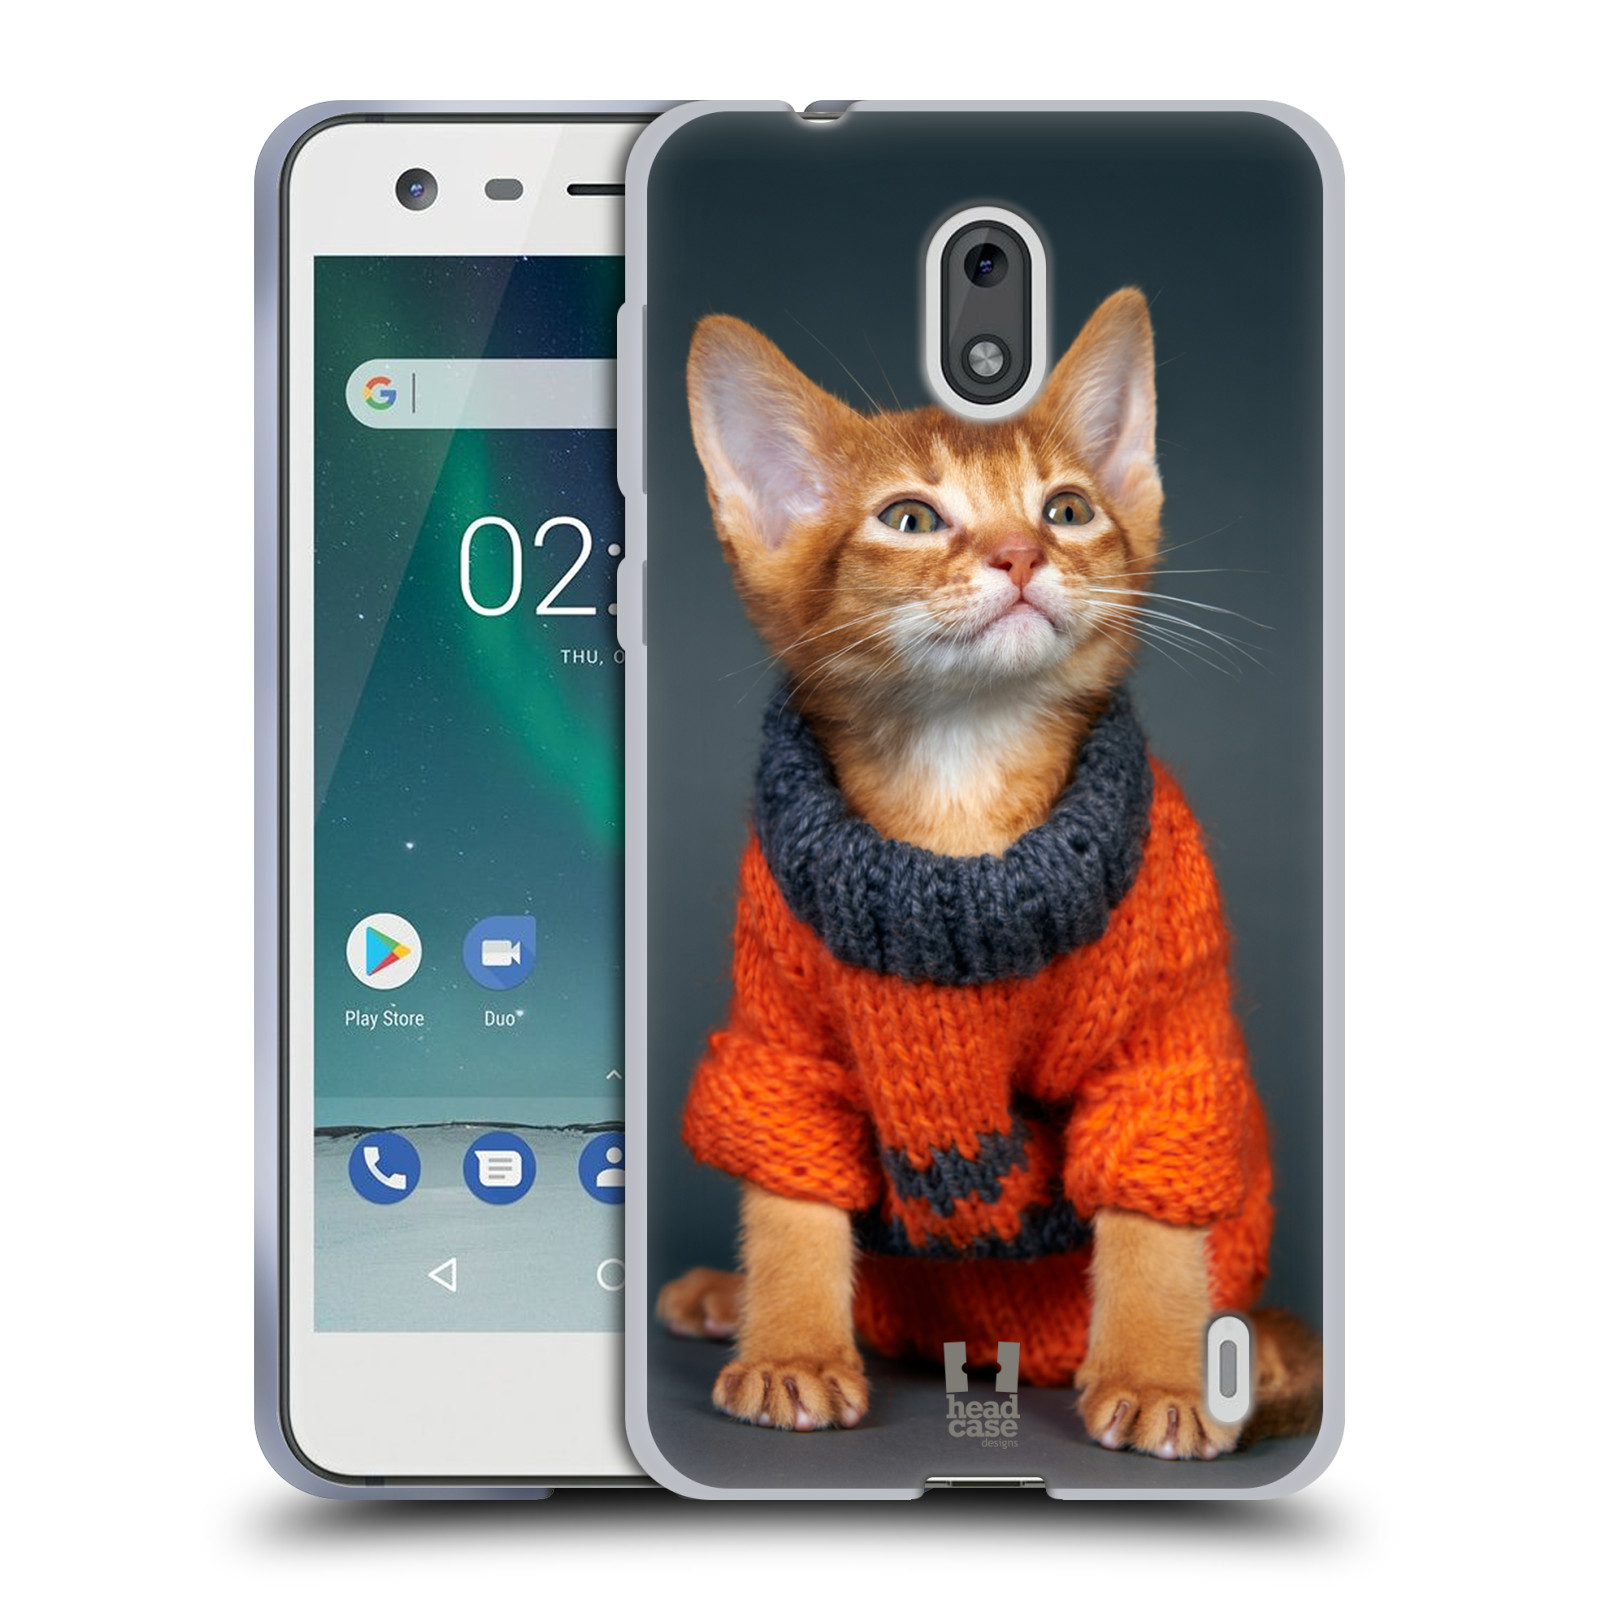 HEAD CASE silikonový obal na mobil NOKIA 2 / NOKIA 2 DUAL SIM vzor Legrační zvířátka kočička v oranžovém svetru